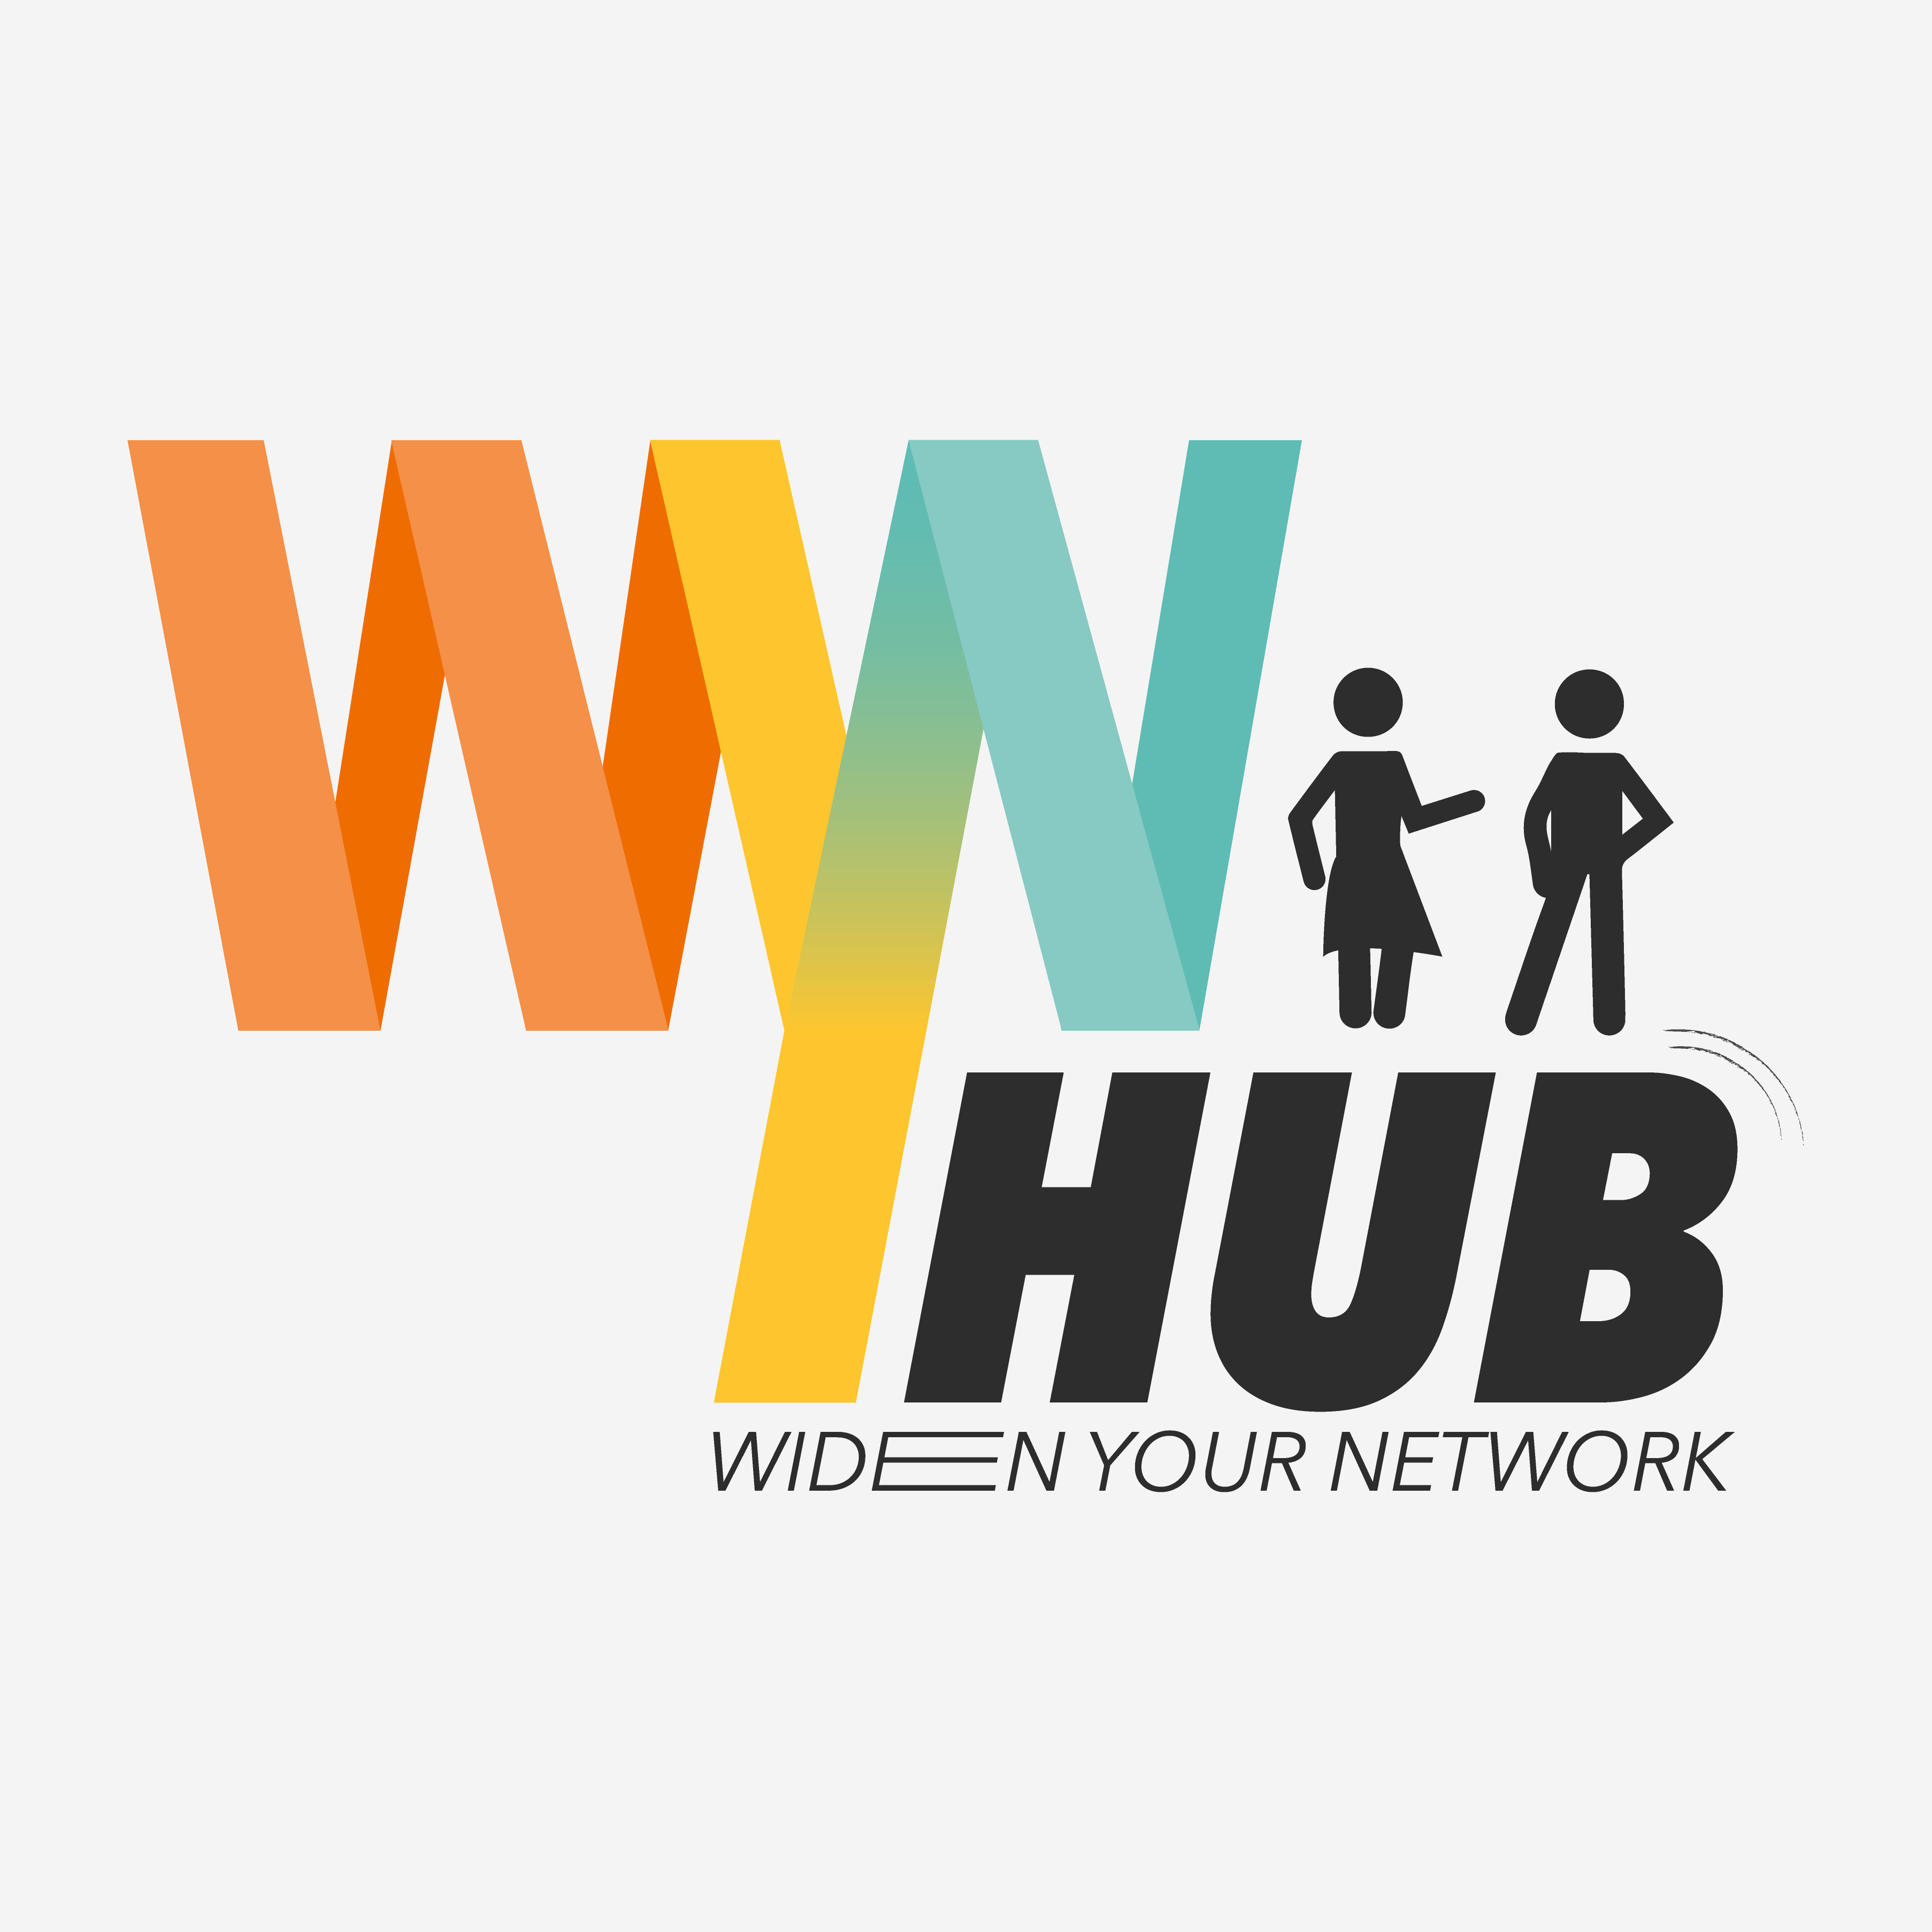 WYNHUB logo